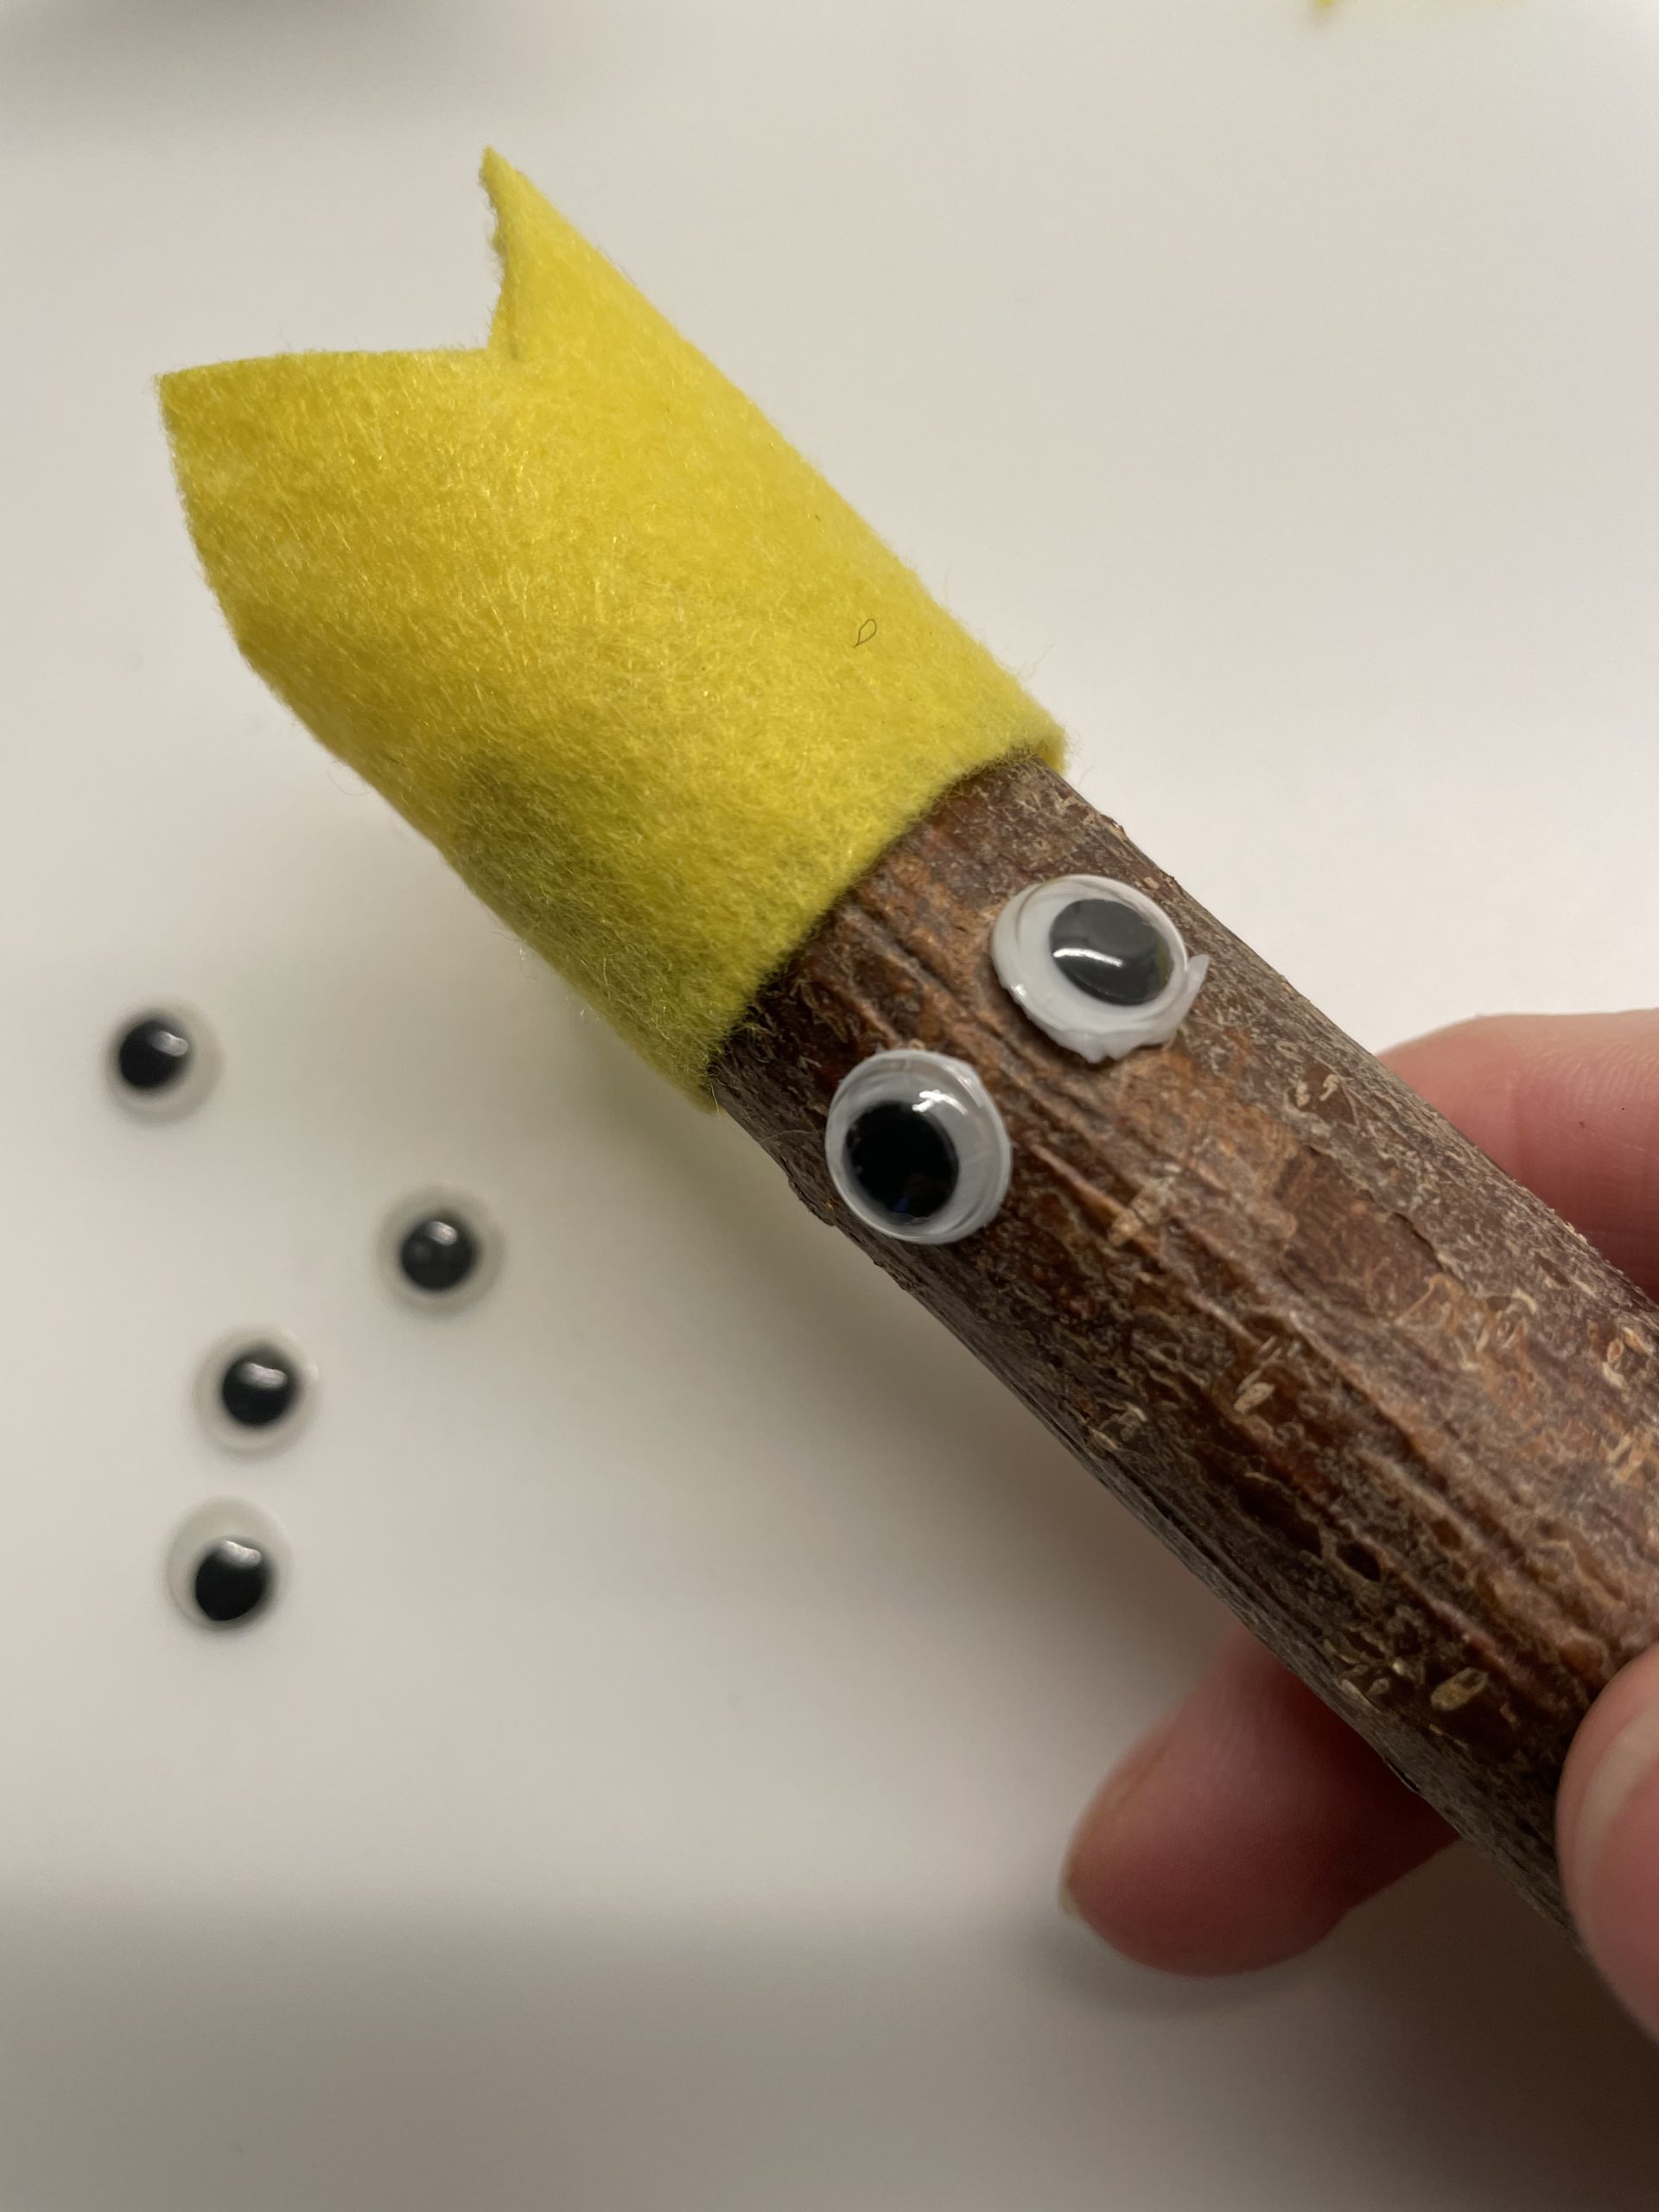 Bild zum Schritt 14 für das Bastel- und DIY-Abenteuer für Kinder: 'Klebe nun die Wackelaugen mit dem Klebestift auf den Ast....'